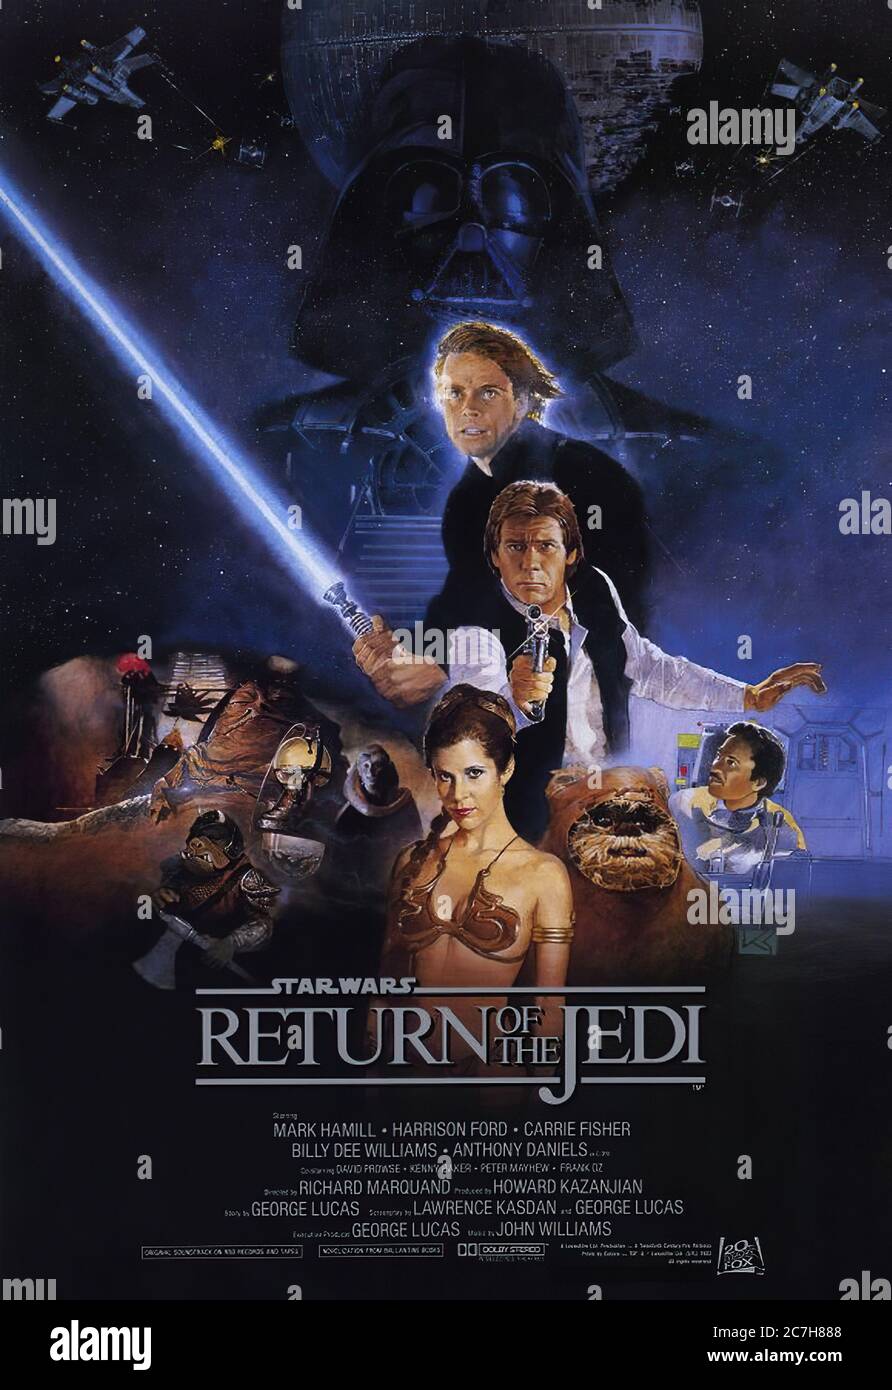 Star Wars episodio VI ritorno del Jedi - Poster di film Foto Stock